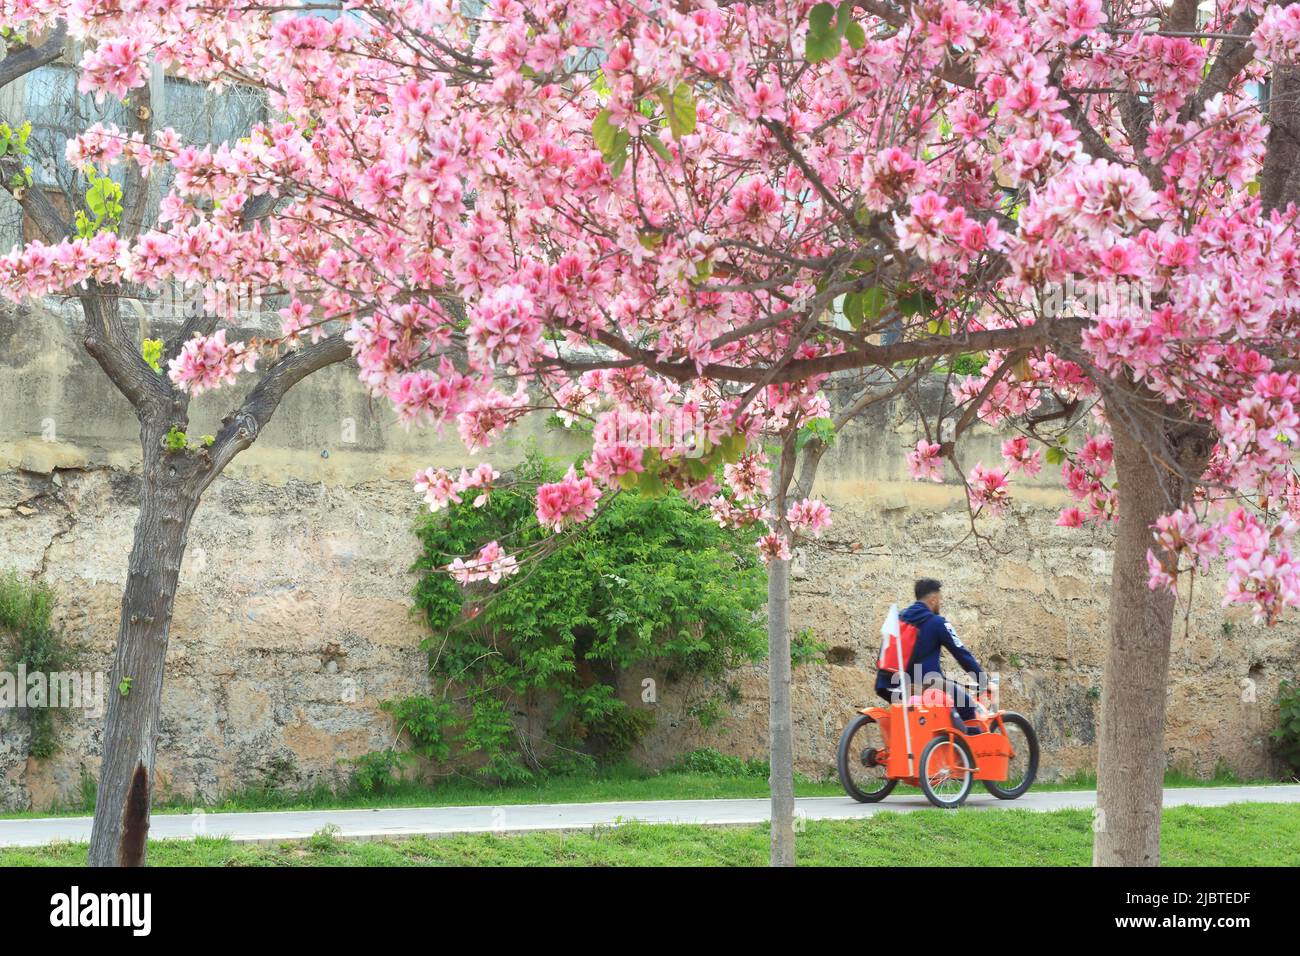 Spanien, Valencia, Turia-Gärten (Jardín del Turia), gemeinsames Fahrrad im öffentlichen Park eröffnet im Jahr 1986, blühende Bäume im Frühjahr Stockfoto